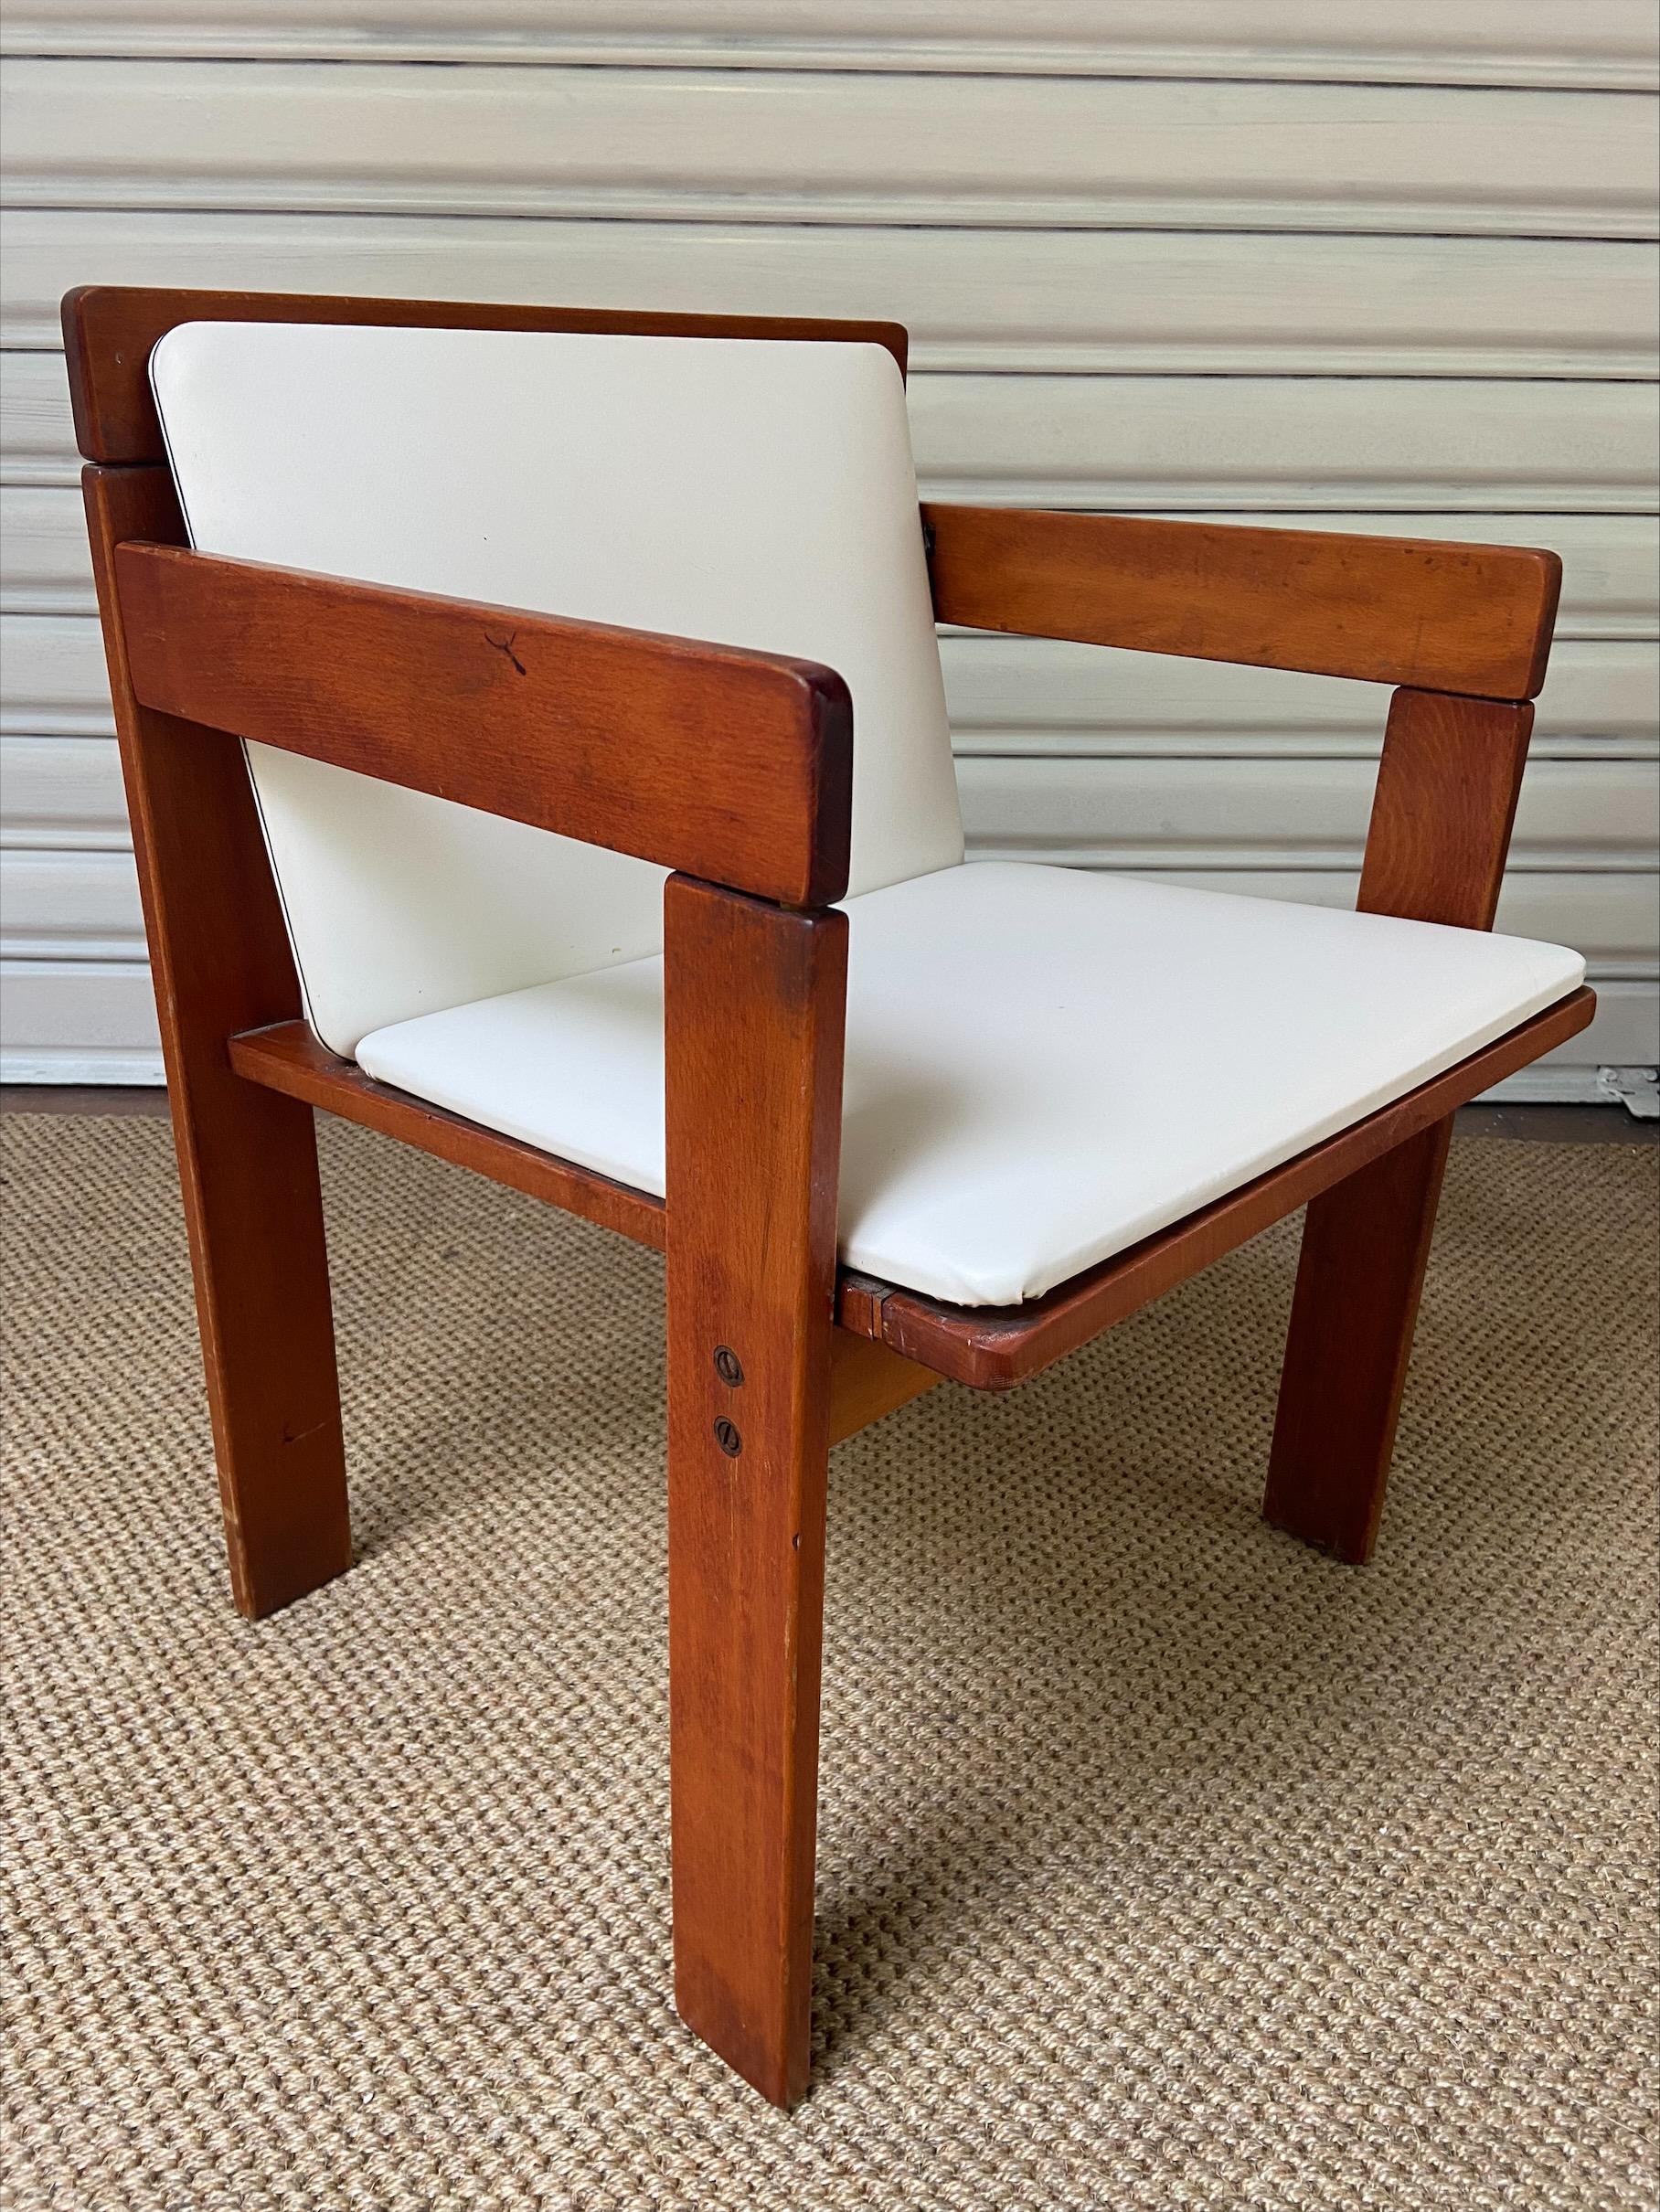 4 fauteuils - Edition Reguitti
Bois et similicuir blanc

1972

Mesures : H 70 x L 52 x P 52cm

Hauteur du siège : 43cm

Le Label de l'éditeur se trouve sur chaque fauteuil.